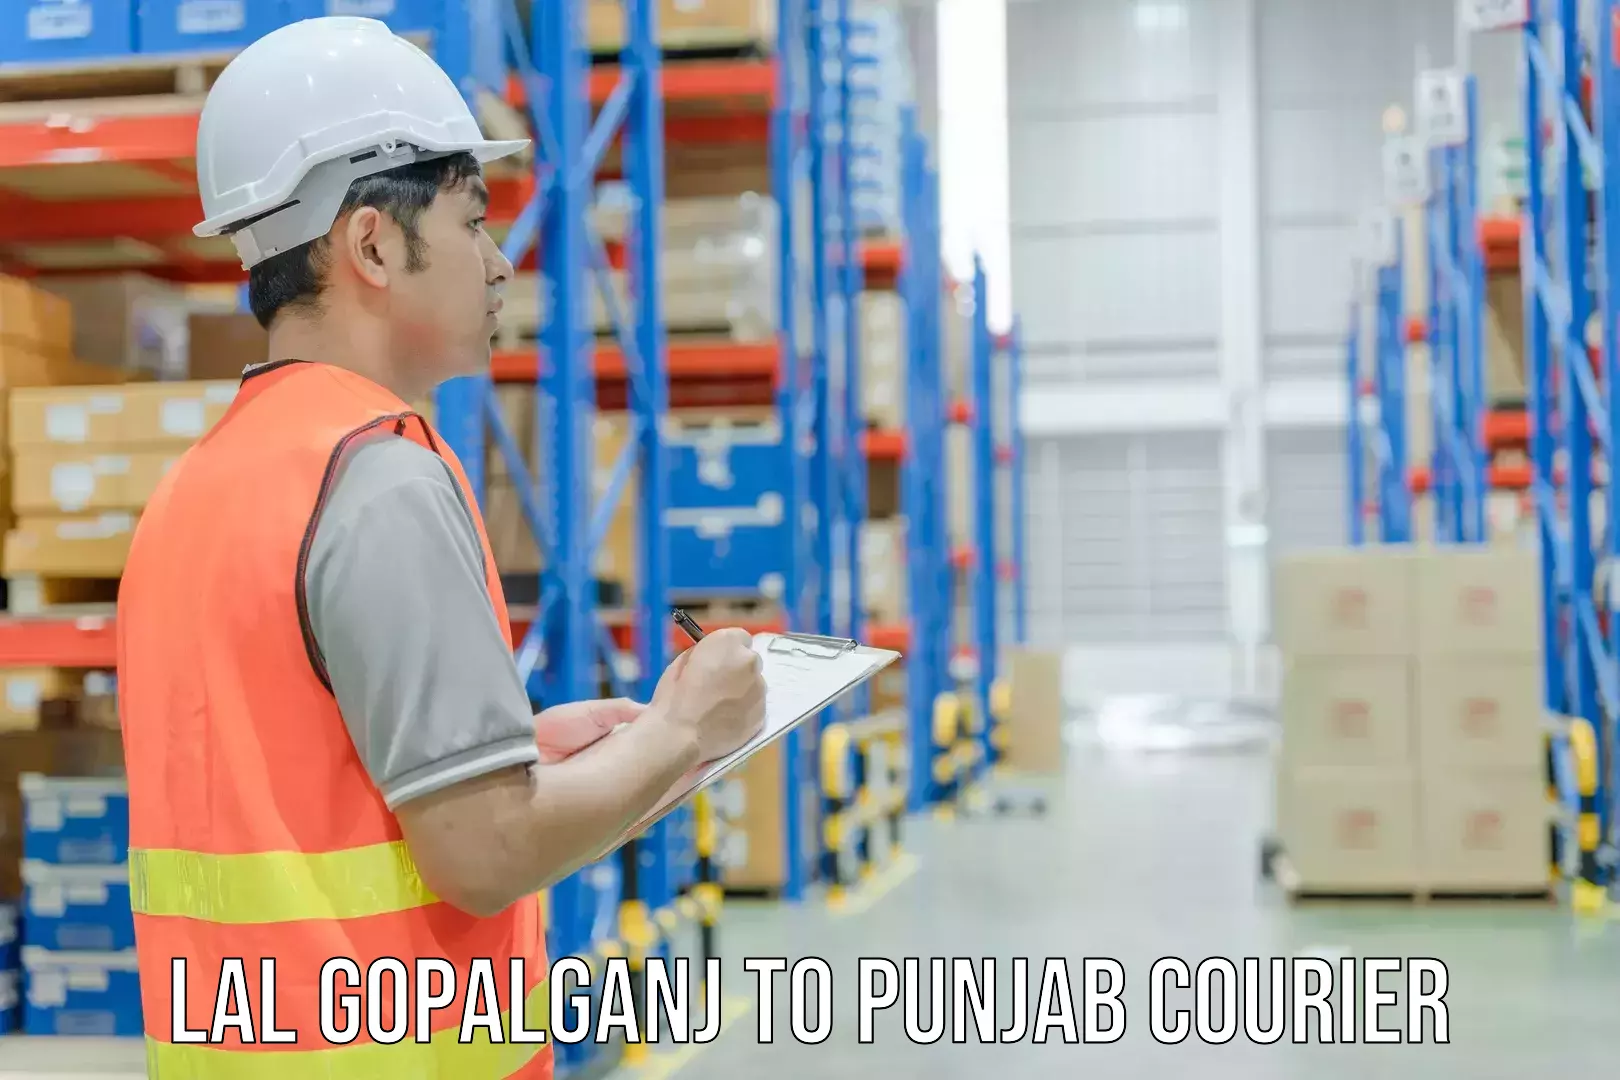 Punctual parcel services Lal Gopalganj to Punjab